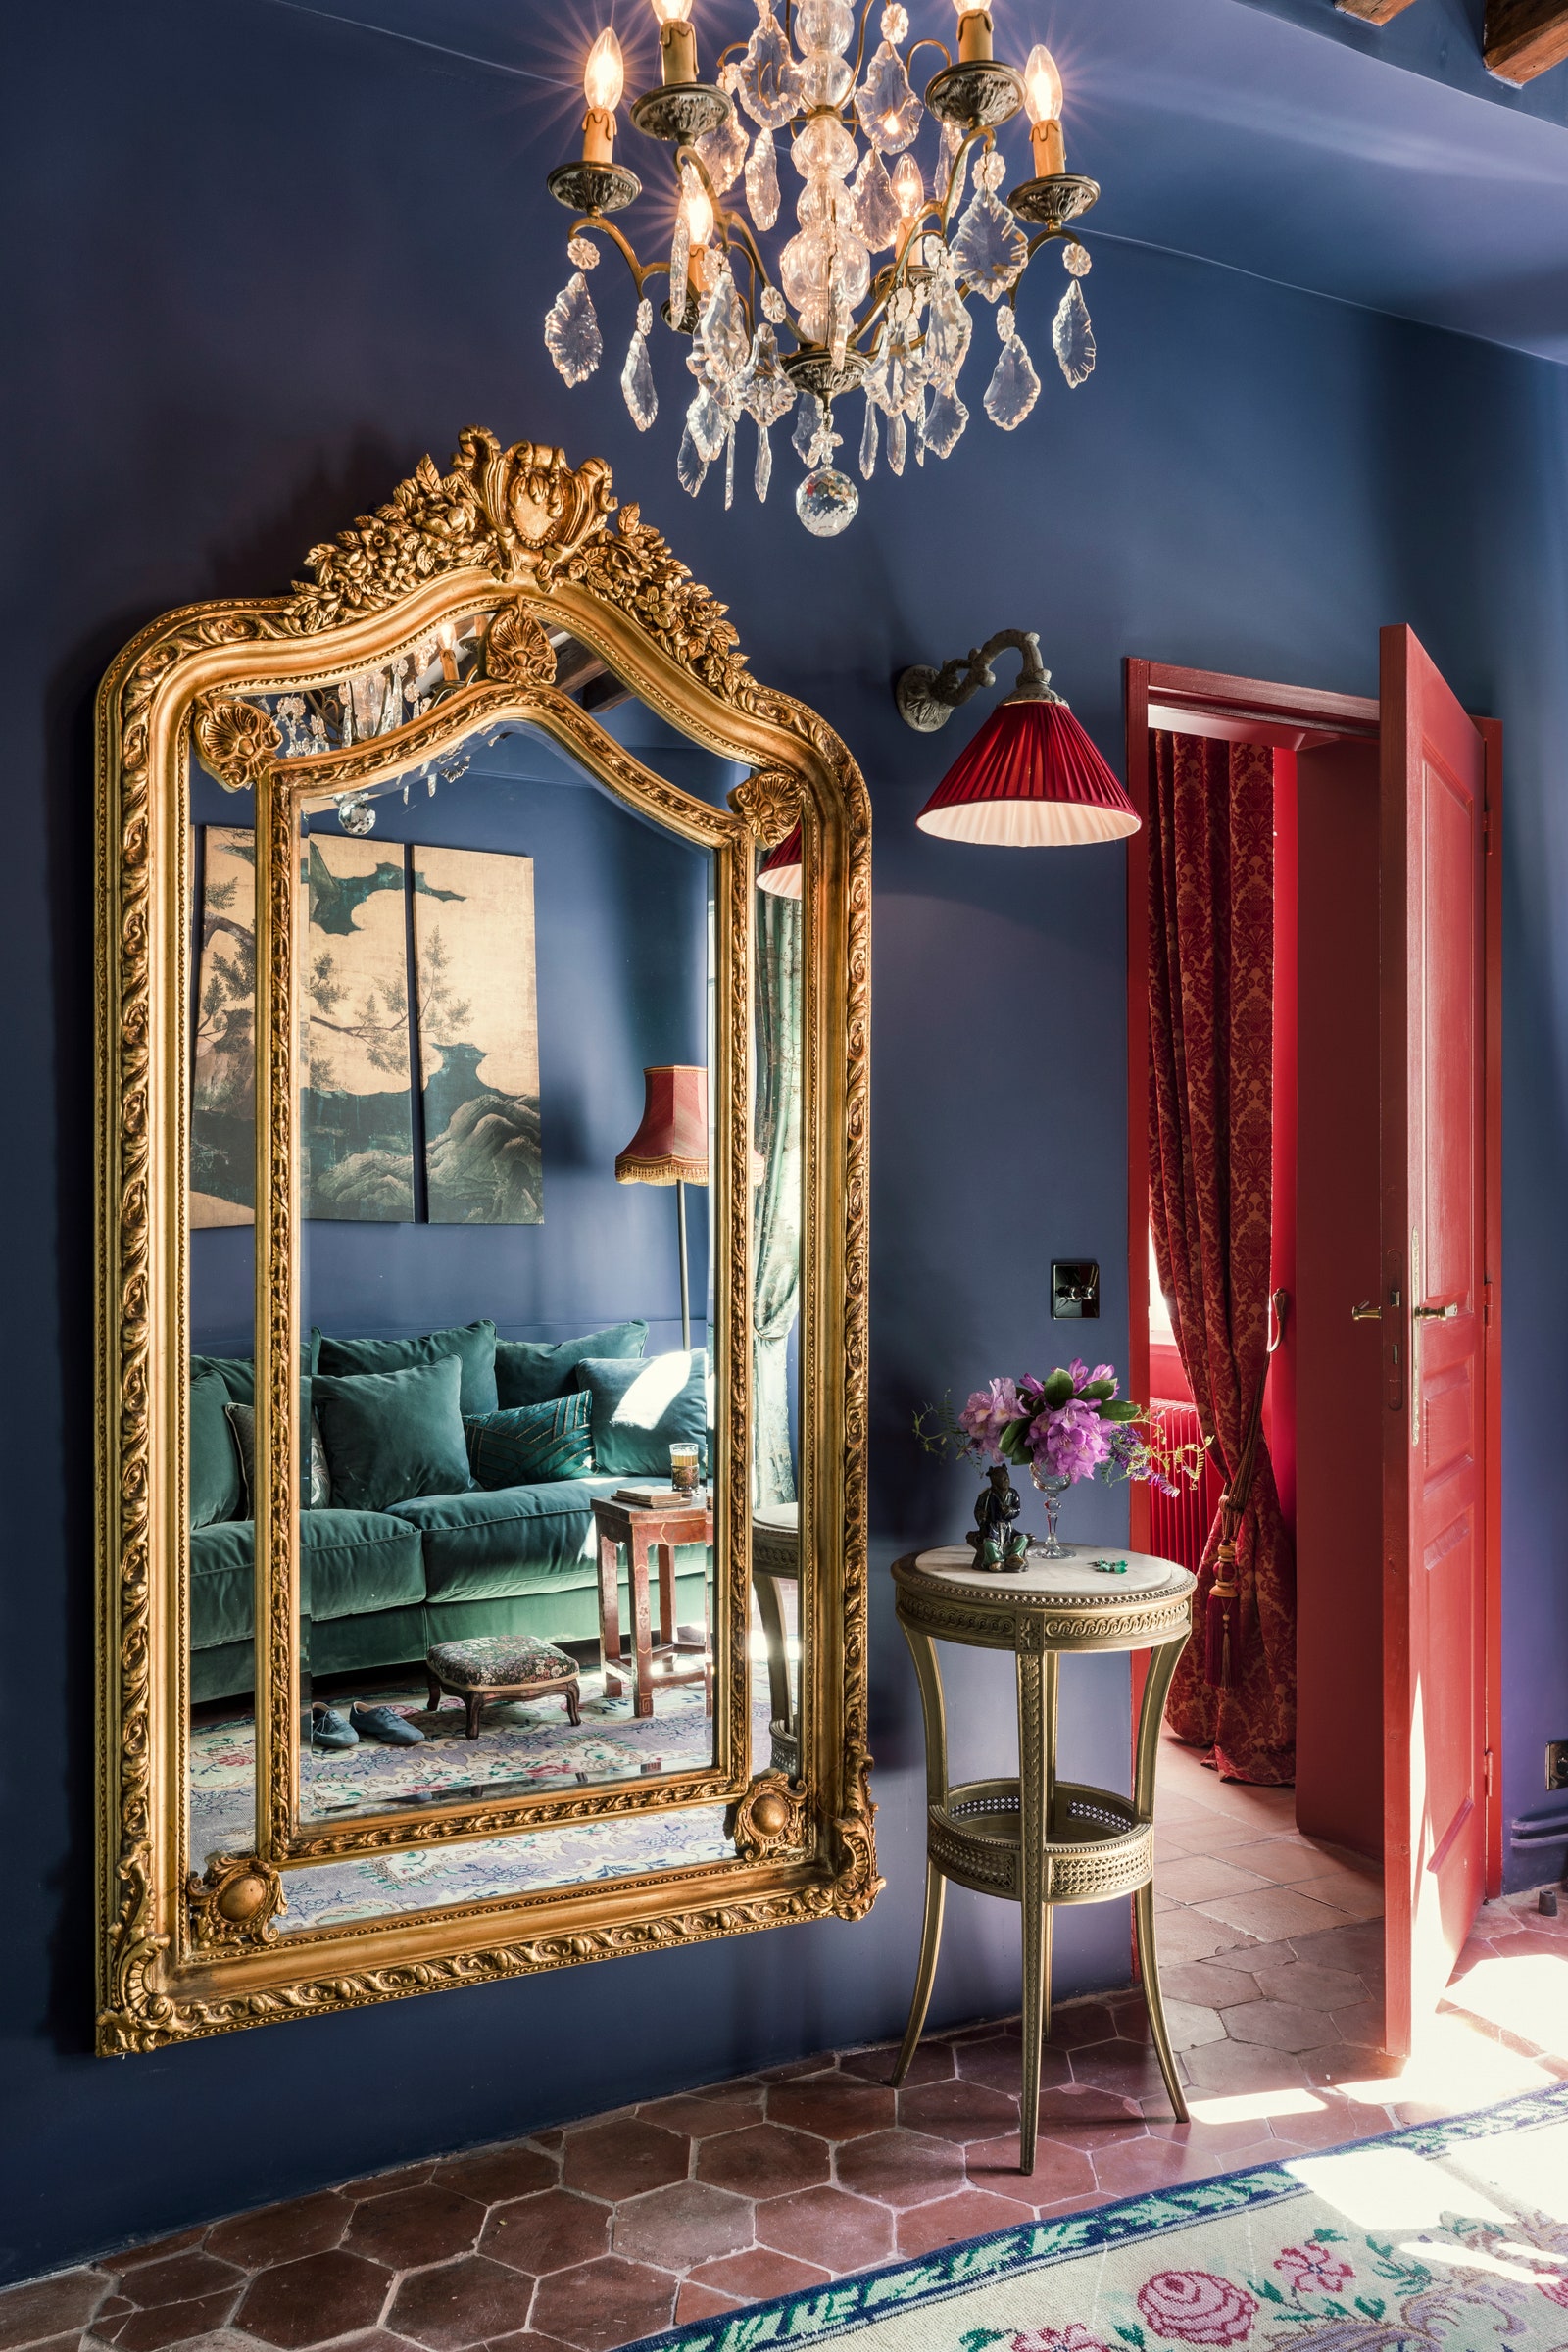 Квартира в Париже 67 м². Фрагмент кабинета. В зеркале отражается репродукция картины Кано Эйтоку.